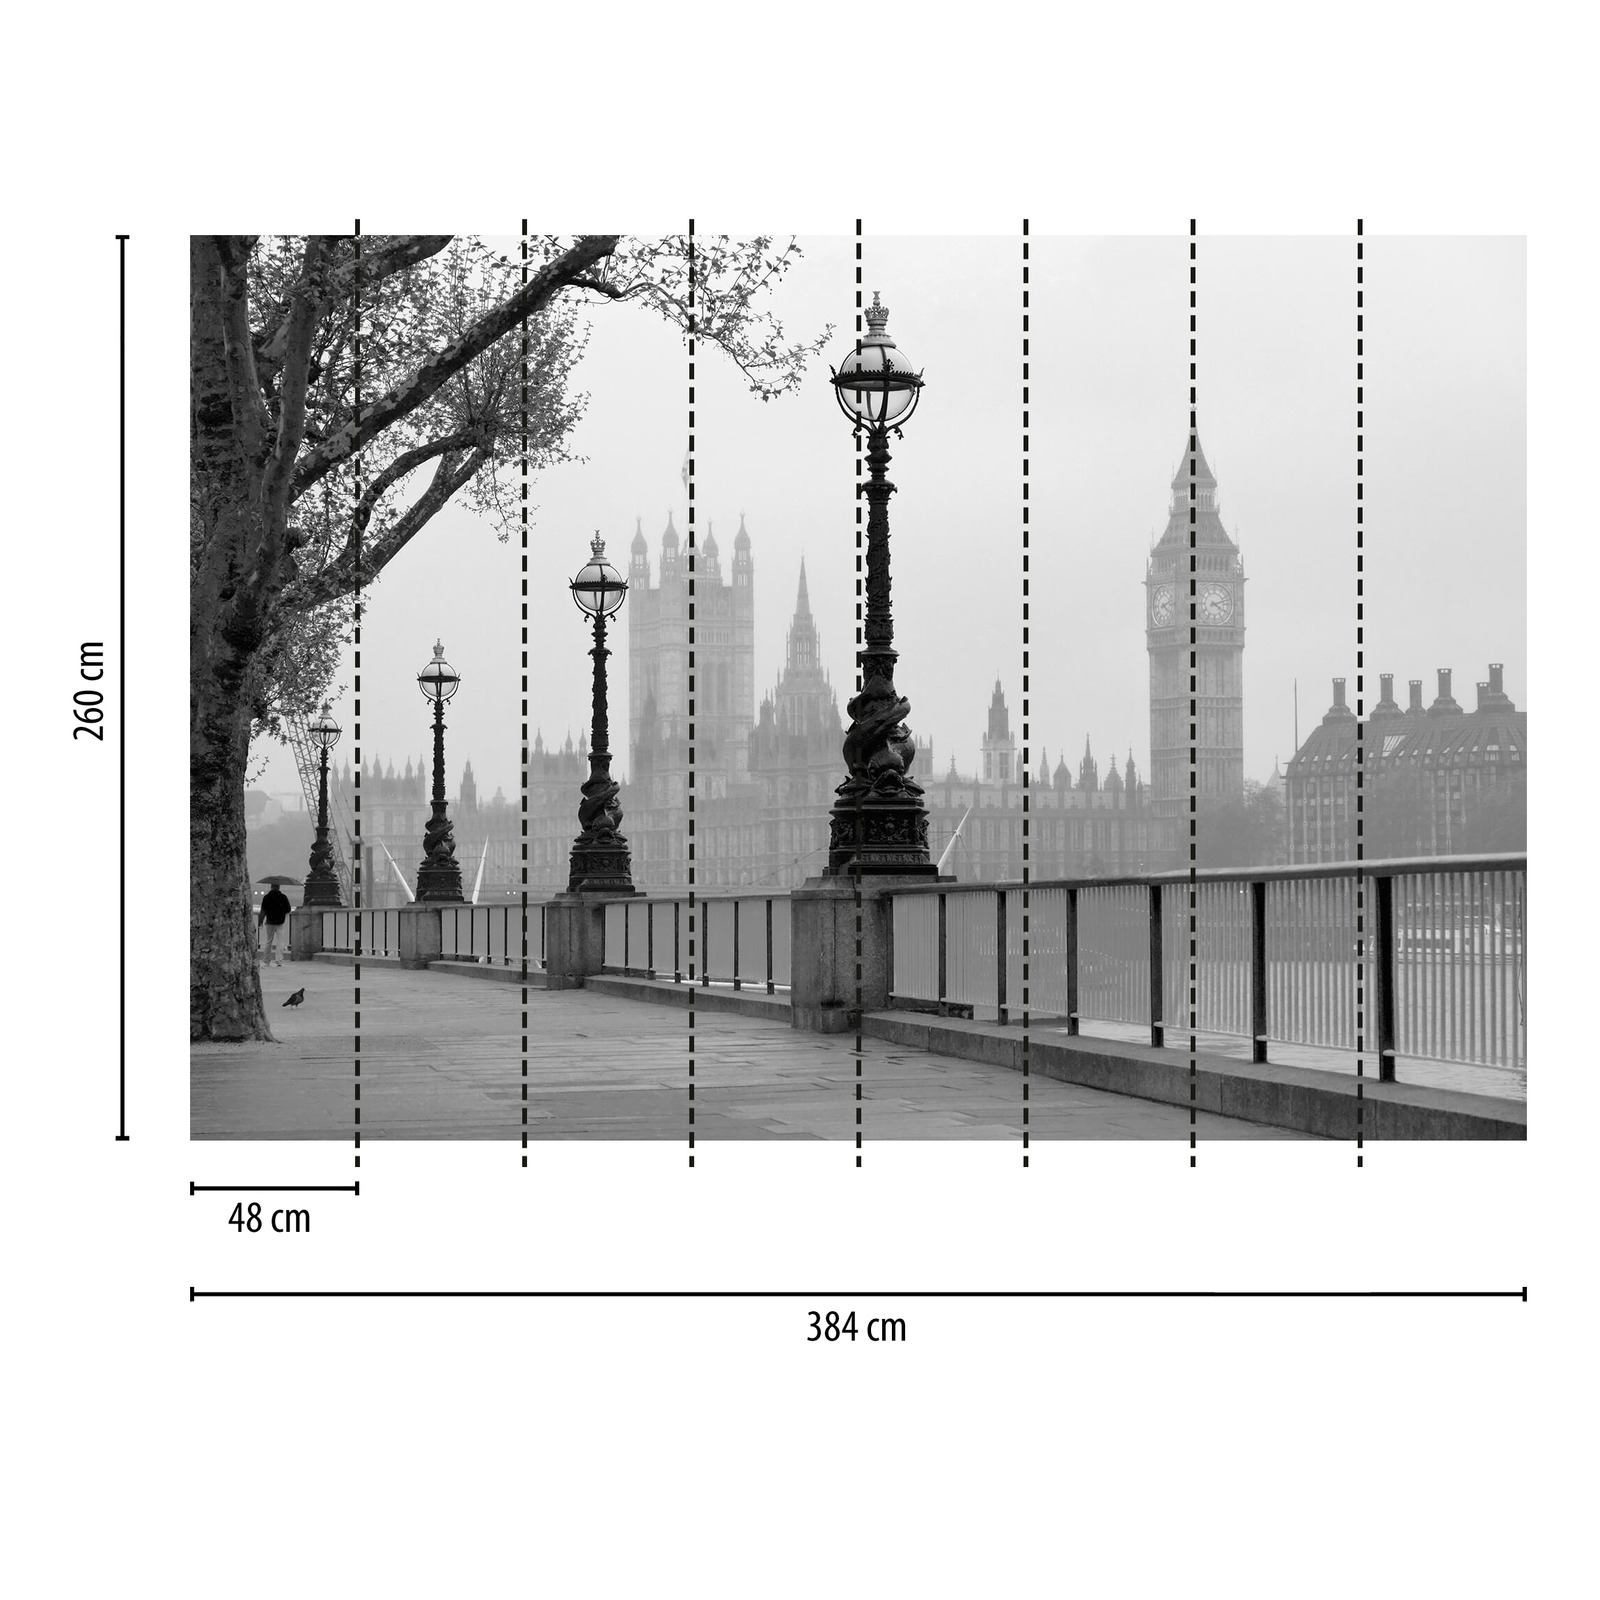             Londen in de Mist Behang - Zwart, Wit, Grijs
        